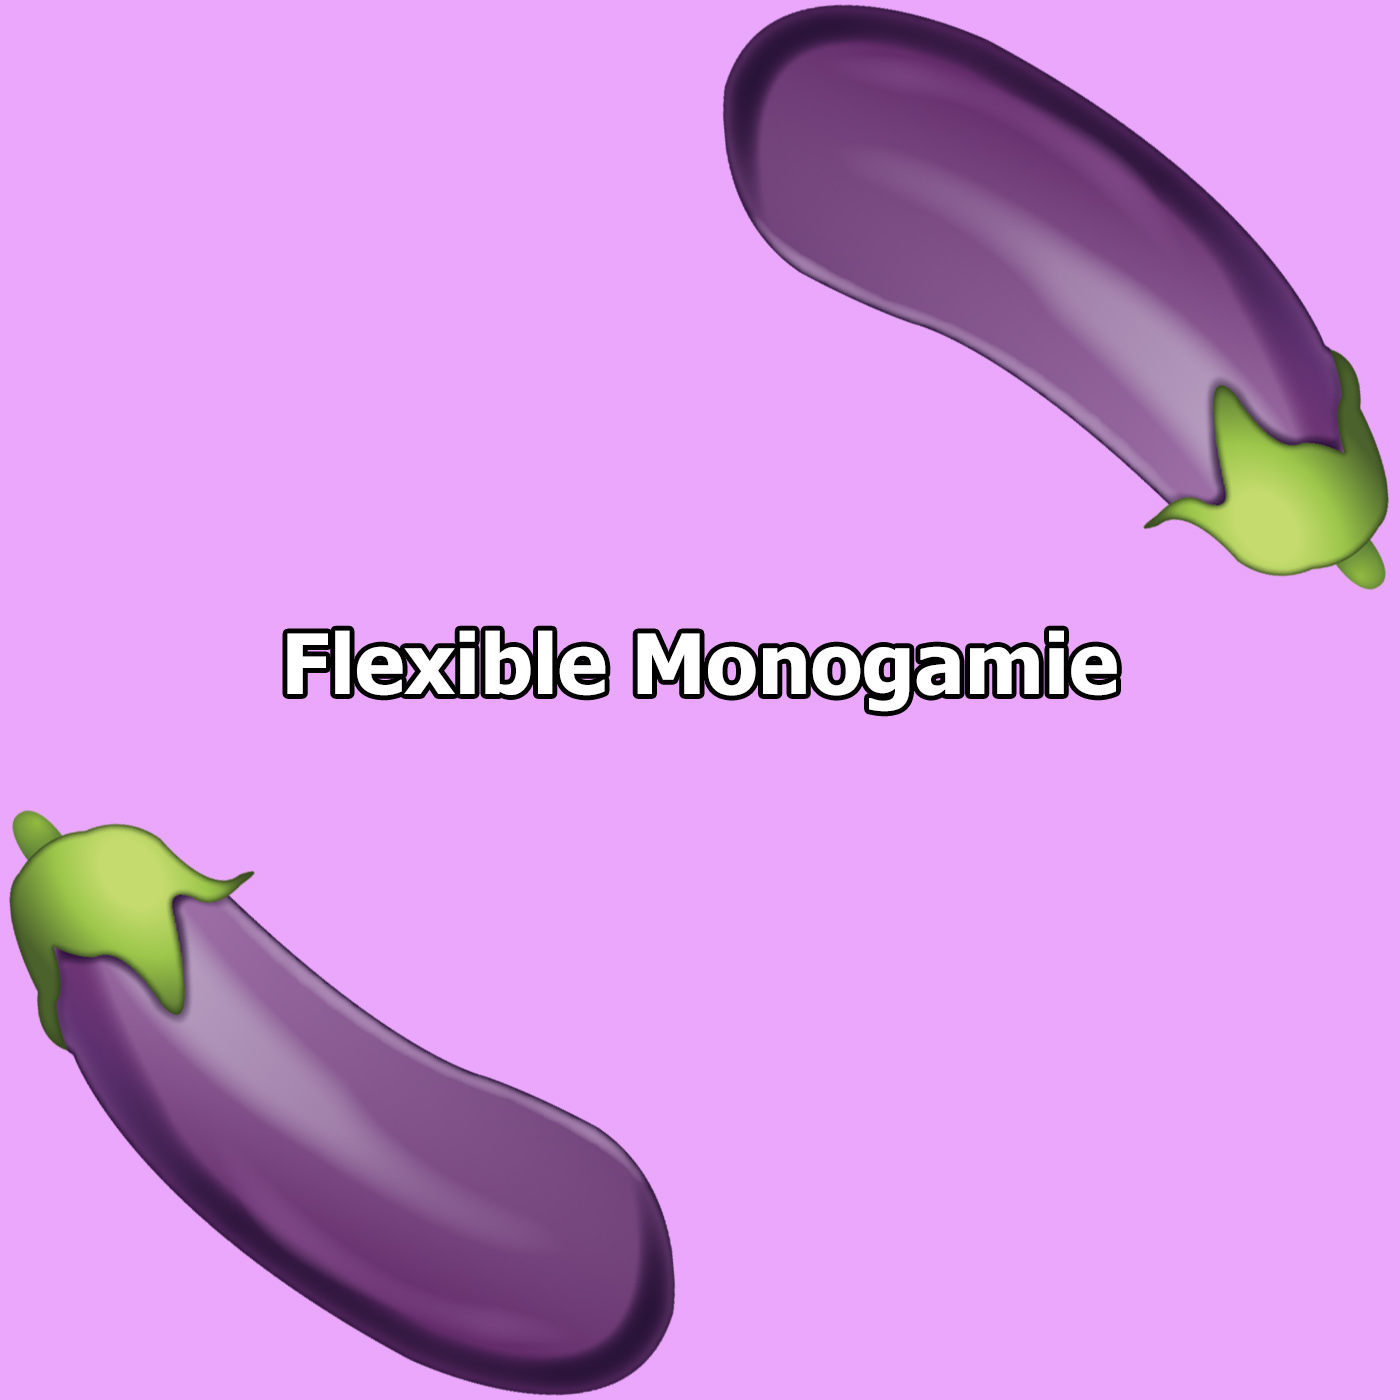 Flexible Monogamie